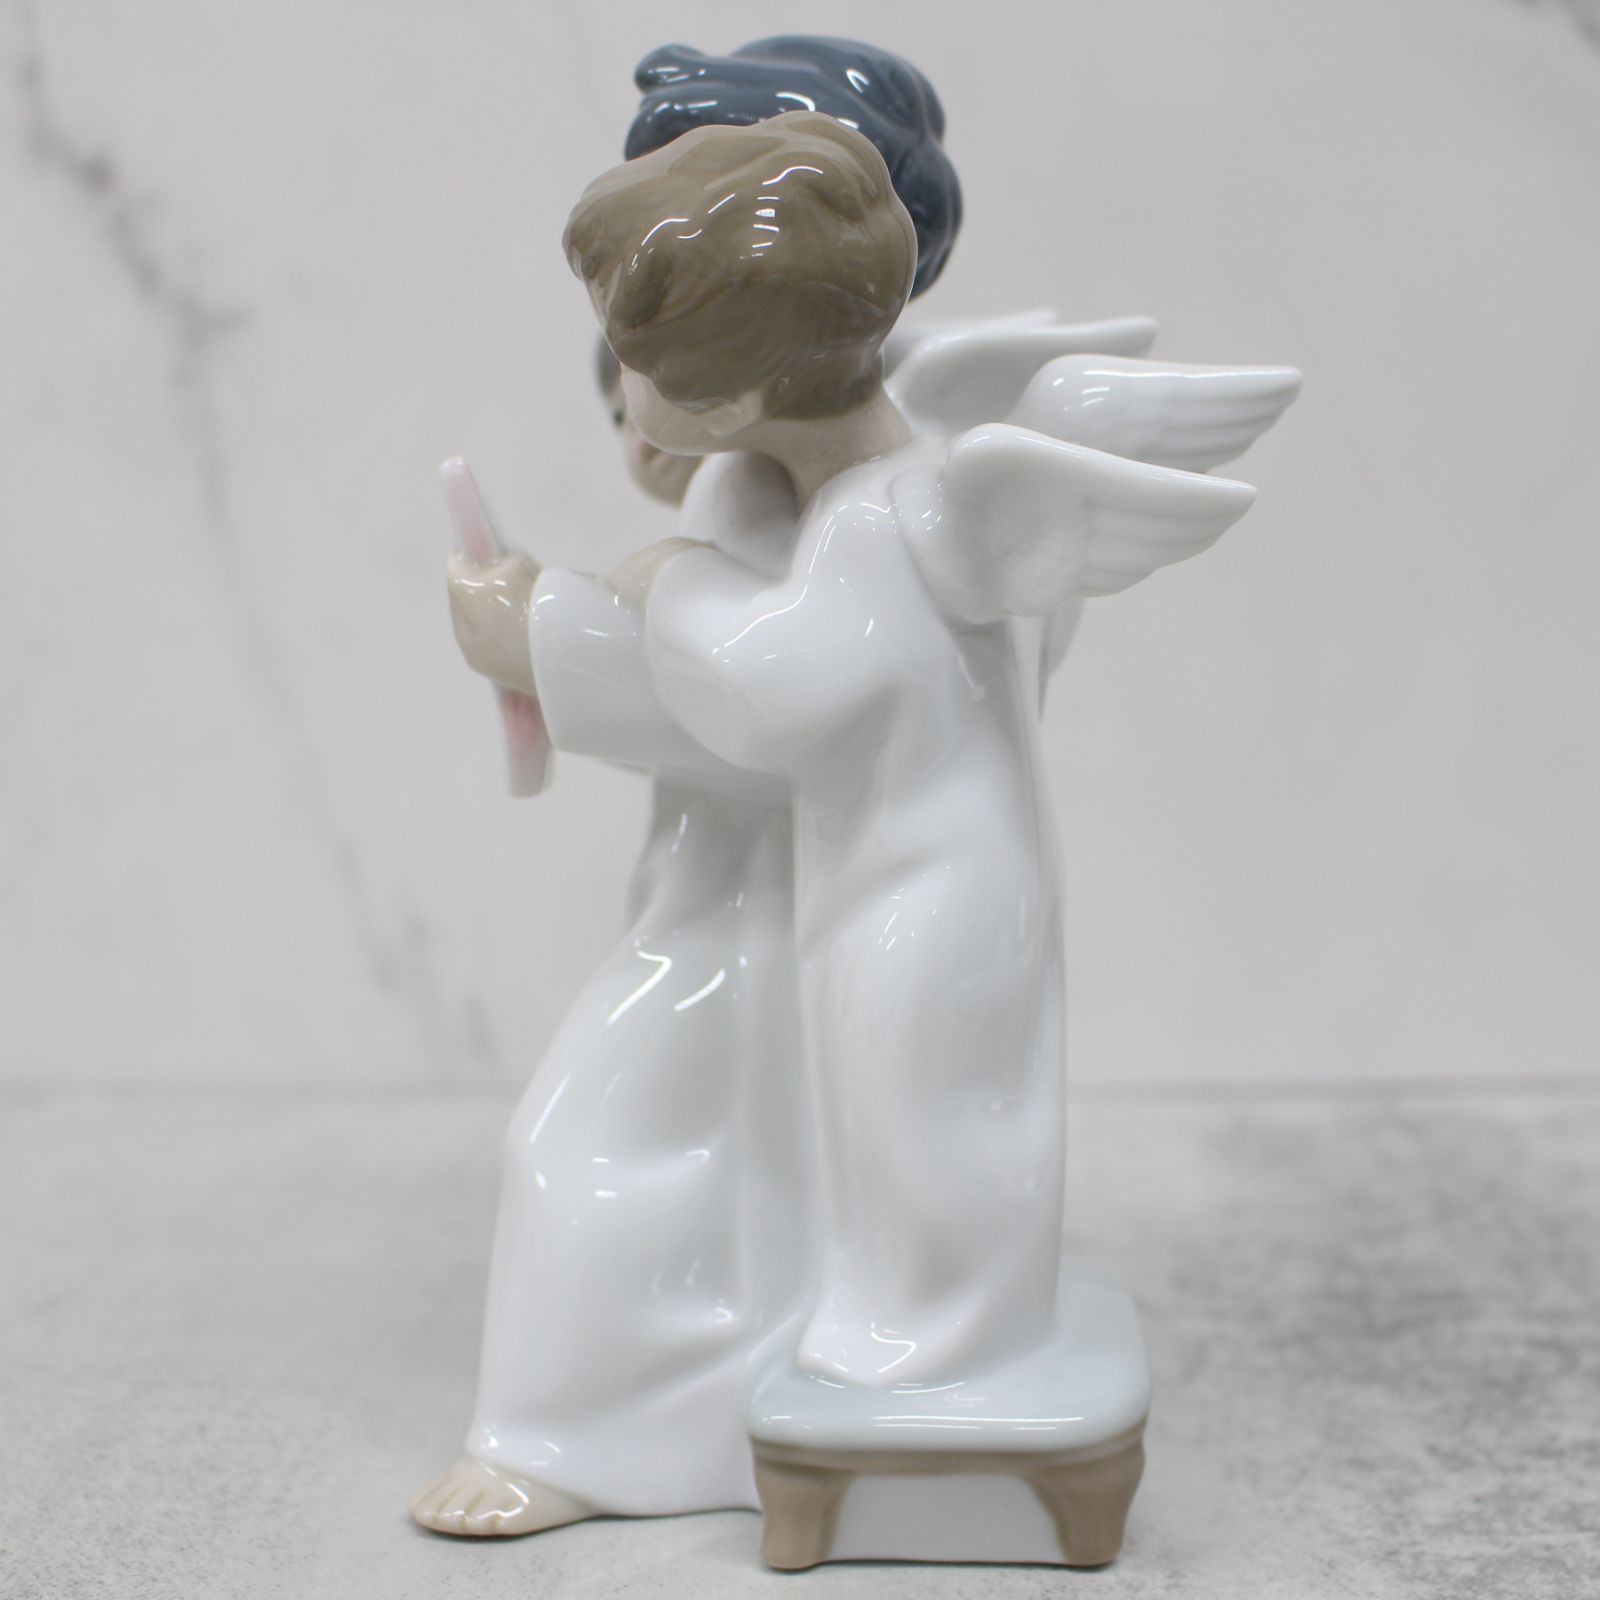 S029)【絶版/美品】LLADRO/リヤドロ 4542 天使のコーラス Angels